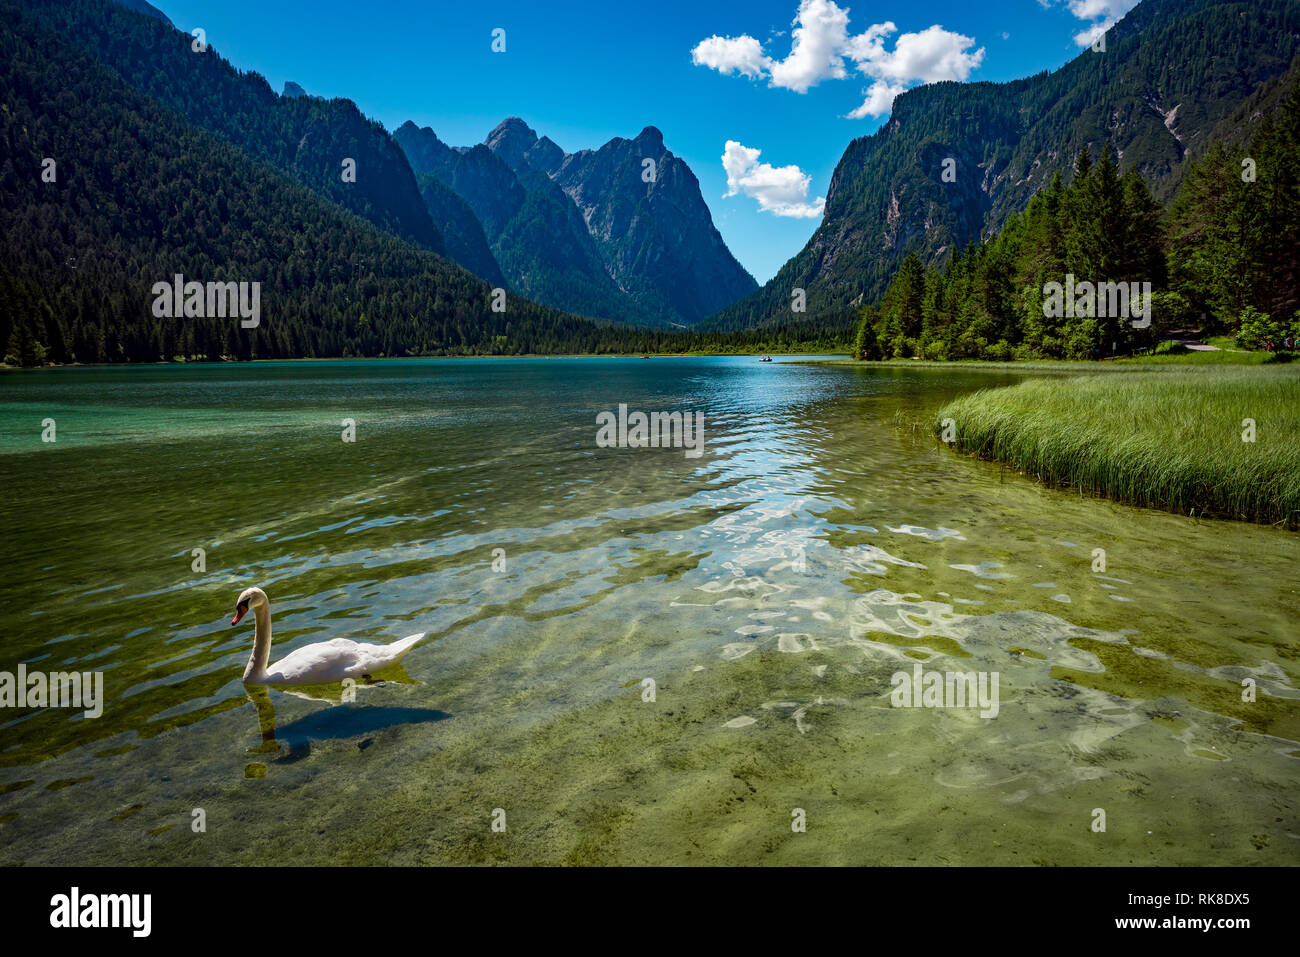 El lago de Dobbiaco en los Dolomitas, la naturaleza hermosa Italia paisaje natural de los Alpes. Foto de stock